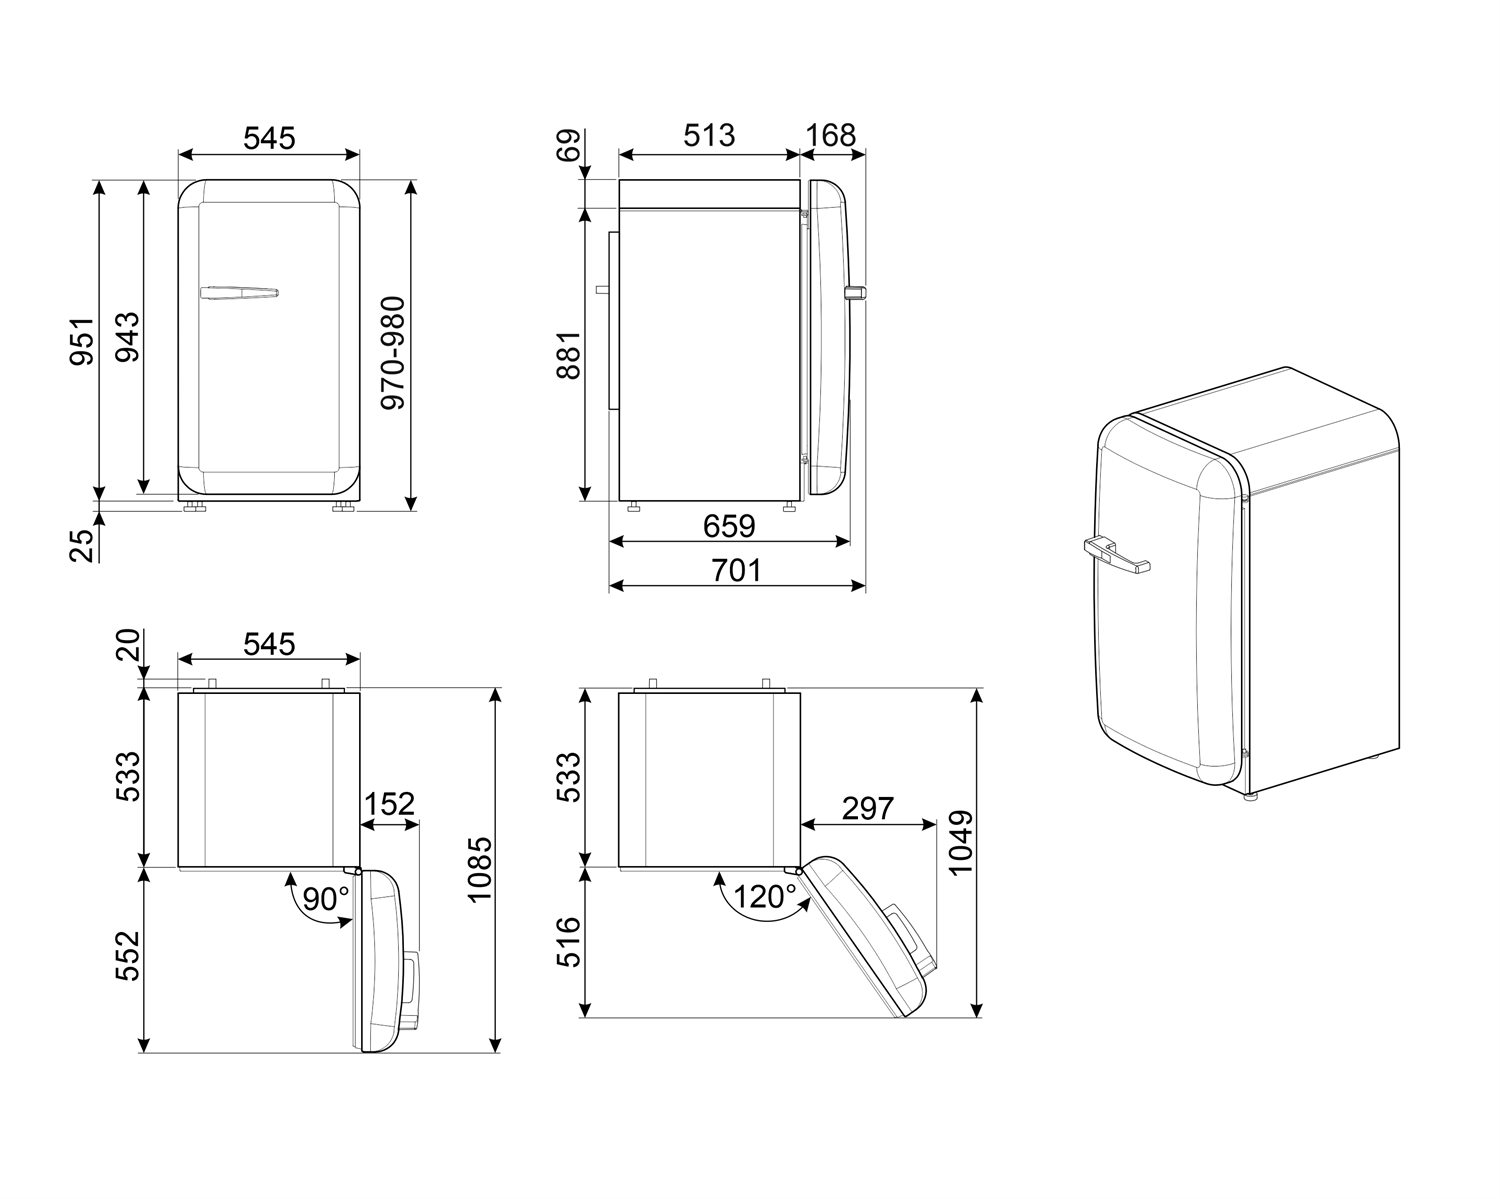 Maattekening SMEG koelkast tafelmodel watergroen FAB10RPG5